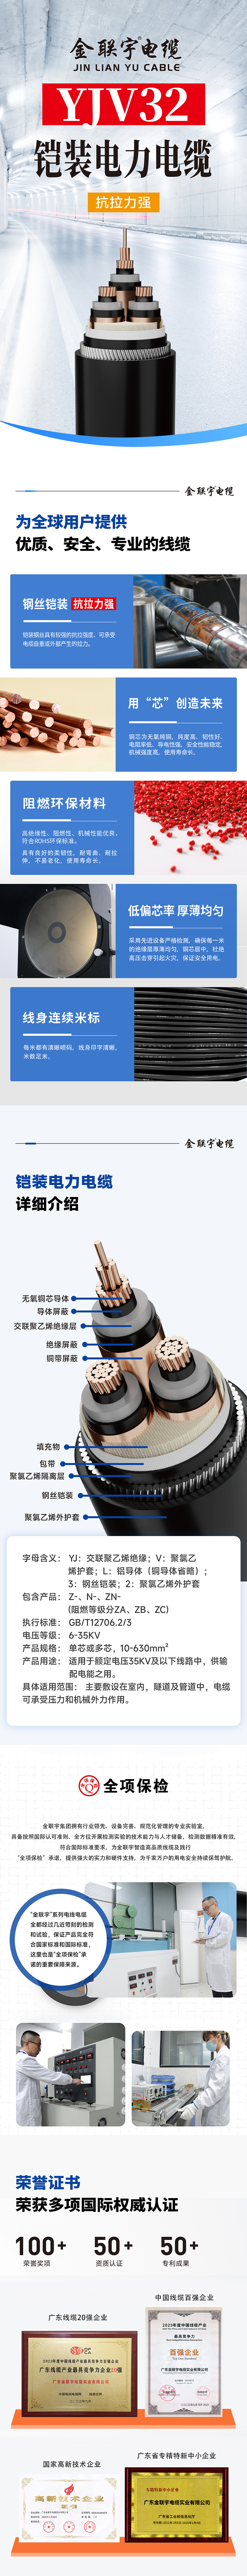 详情页-电力电缆YJV32.jpg